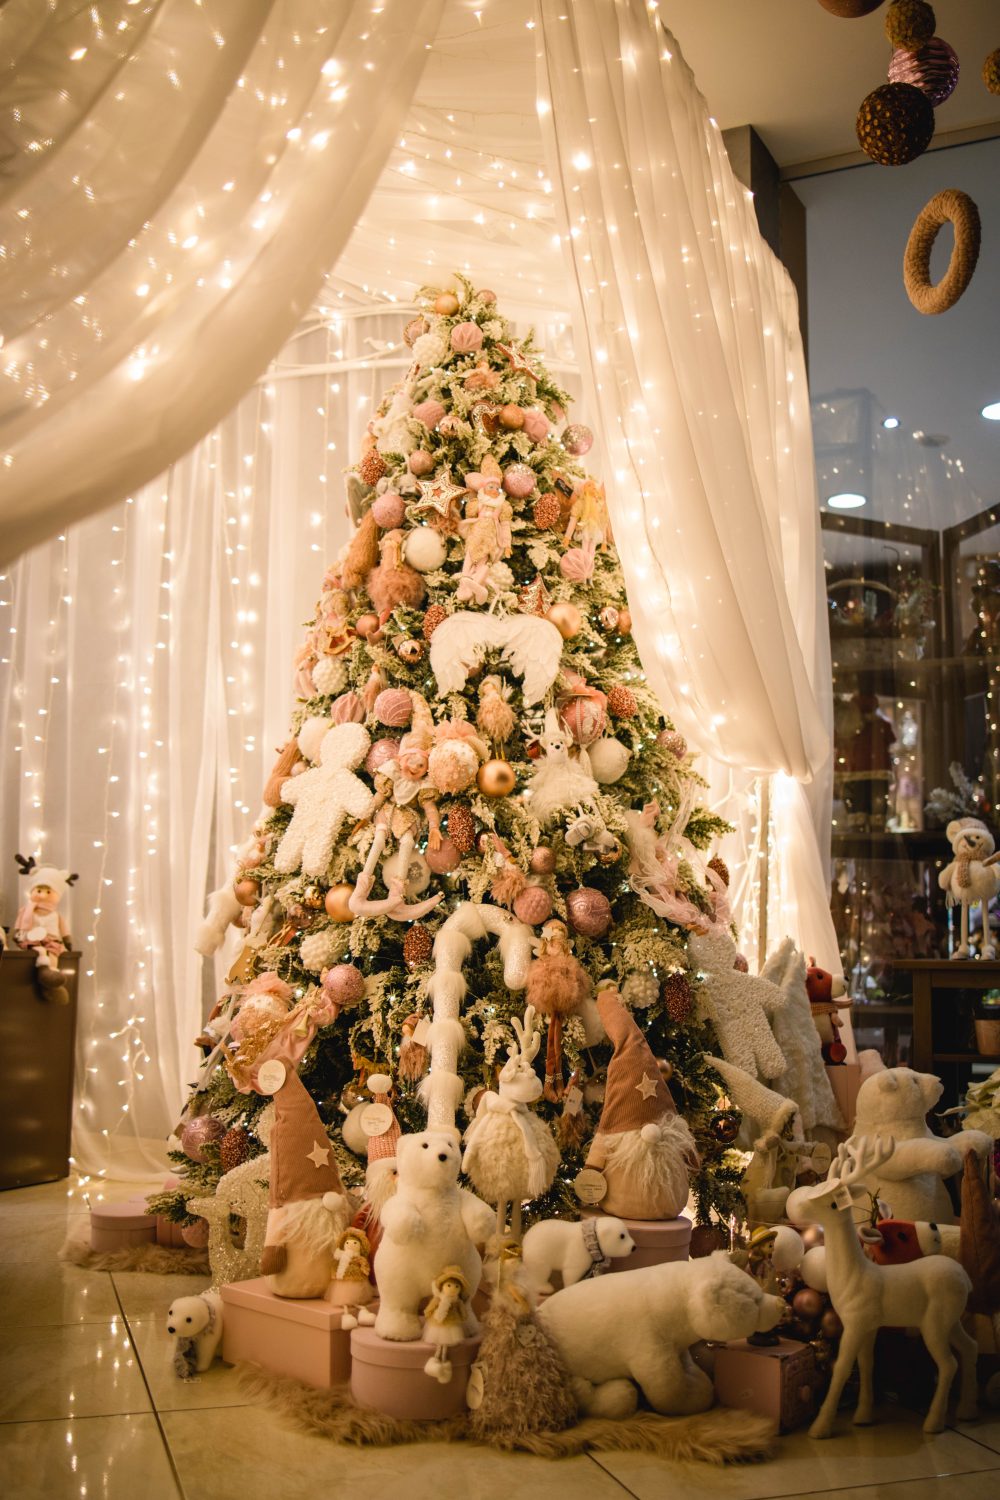 Brad Crăciun decorat complet – Roz – Livrare oriunde în țară (Alegria Christmas Collection)